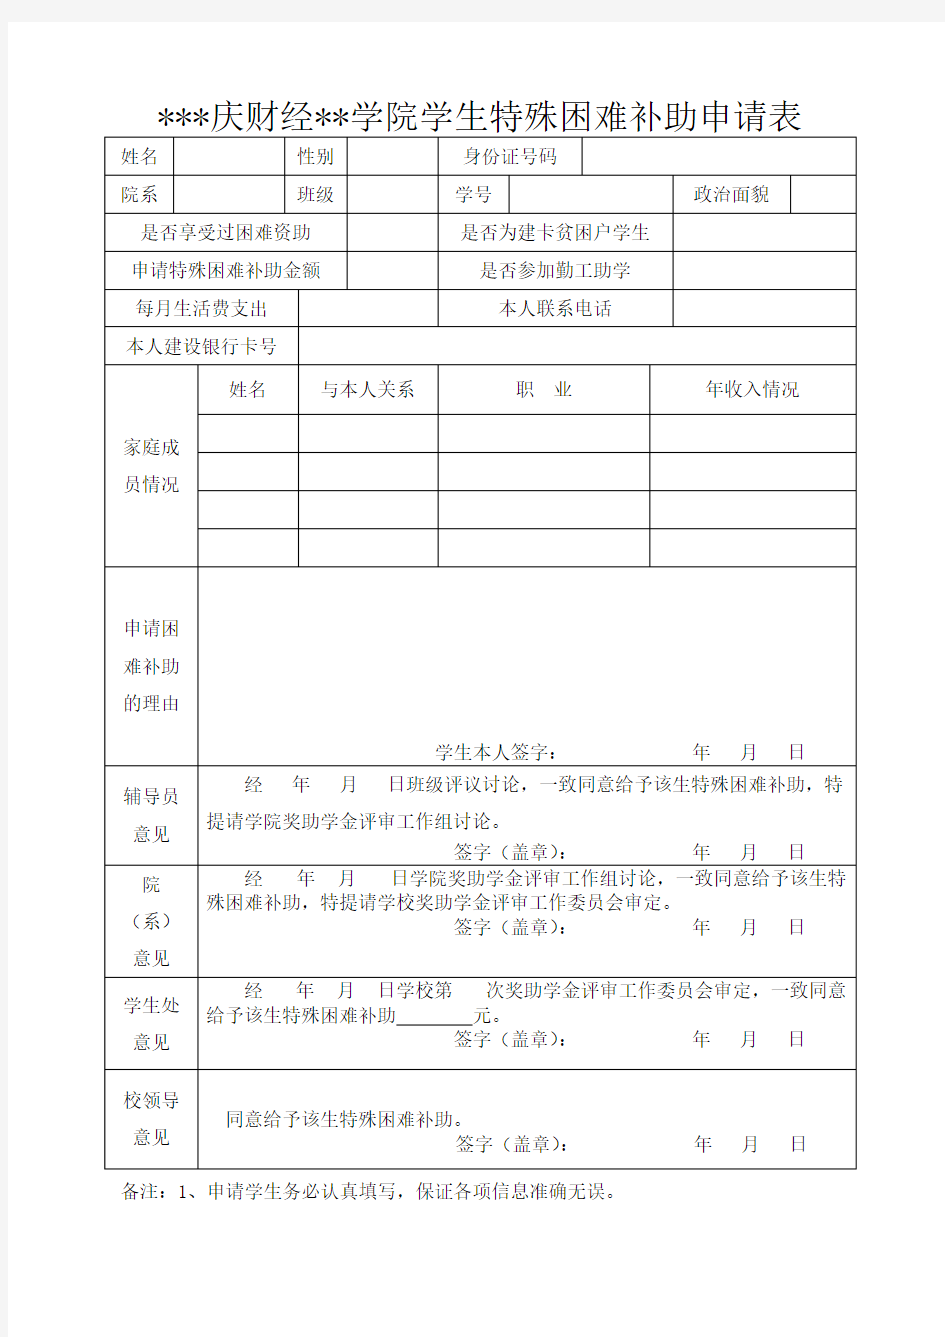 重庆财经职业学院学生特殊困难补助申请表【模板】